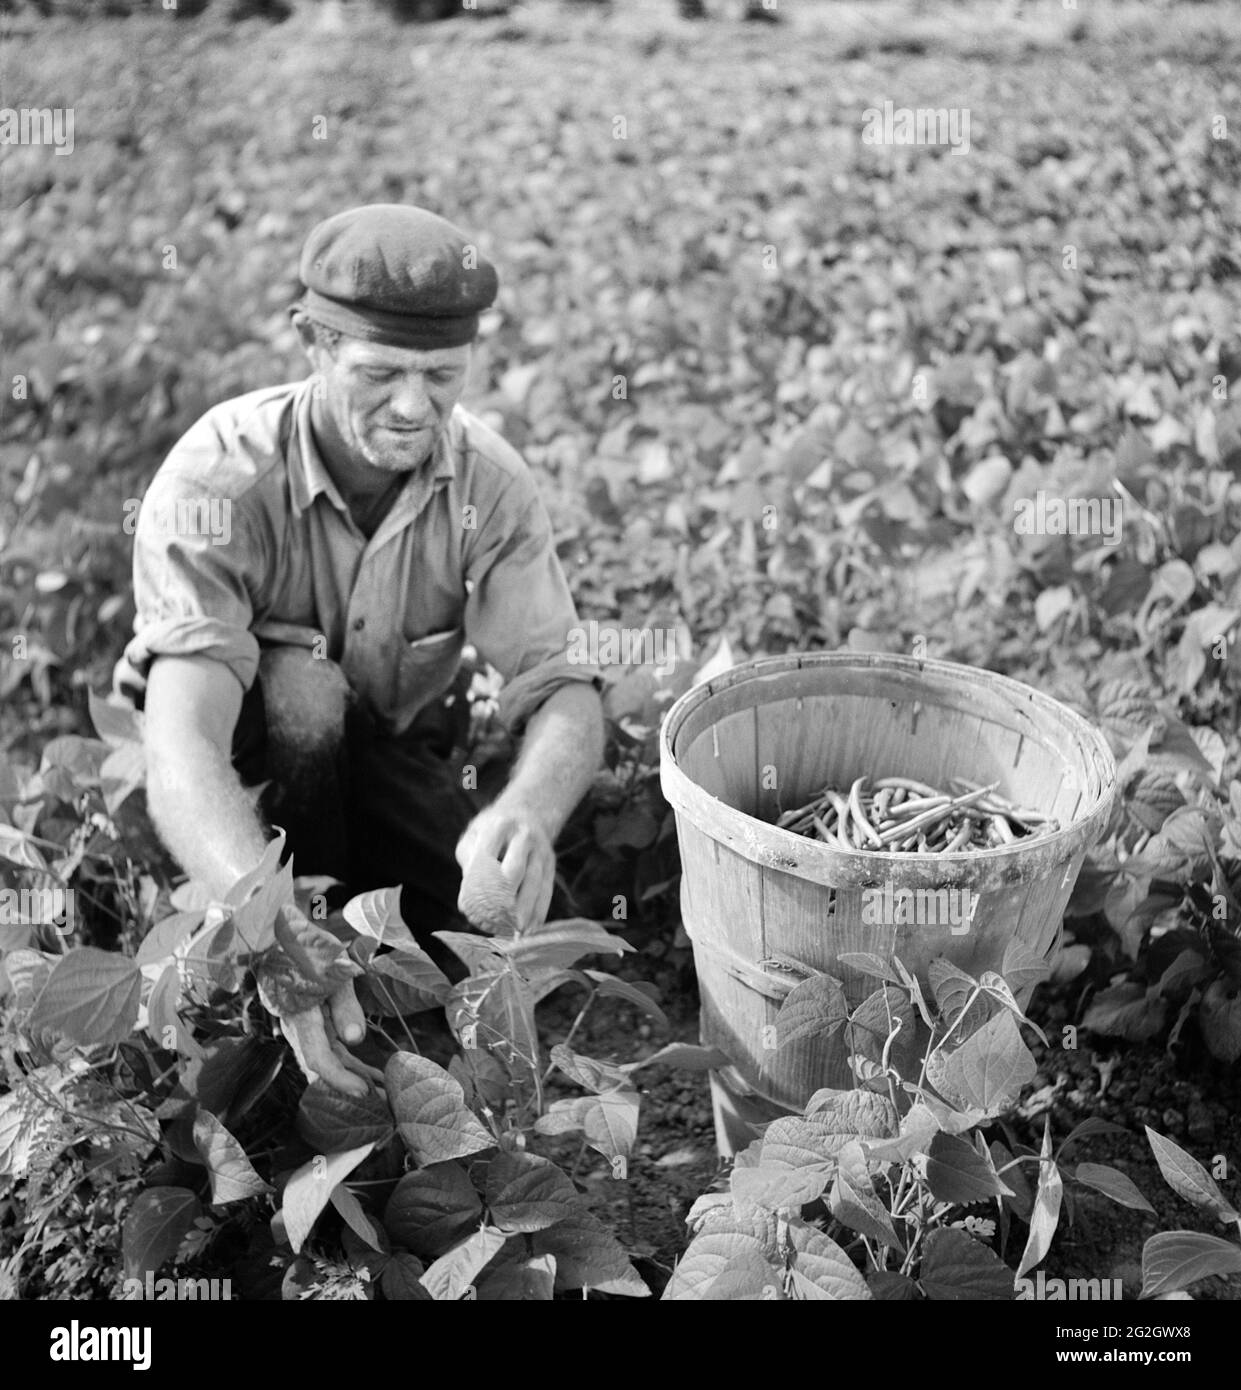 Travailleur migrant cueillant des haricots à Field, Homestead, Floride, États-Unis, Marion Post Wolcott, Administration américaine de la sécurité agricole, janvier 1939 Banque D'Images